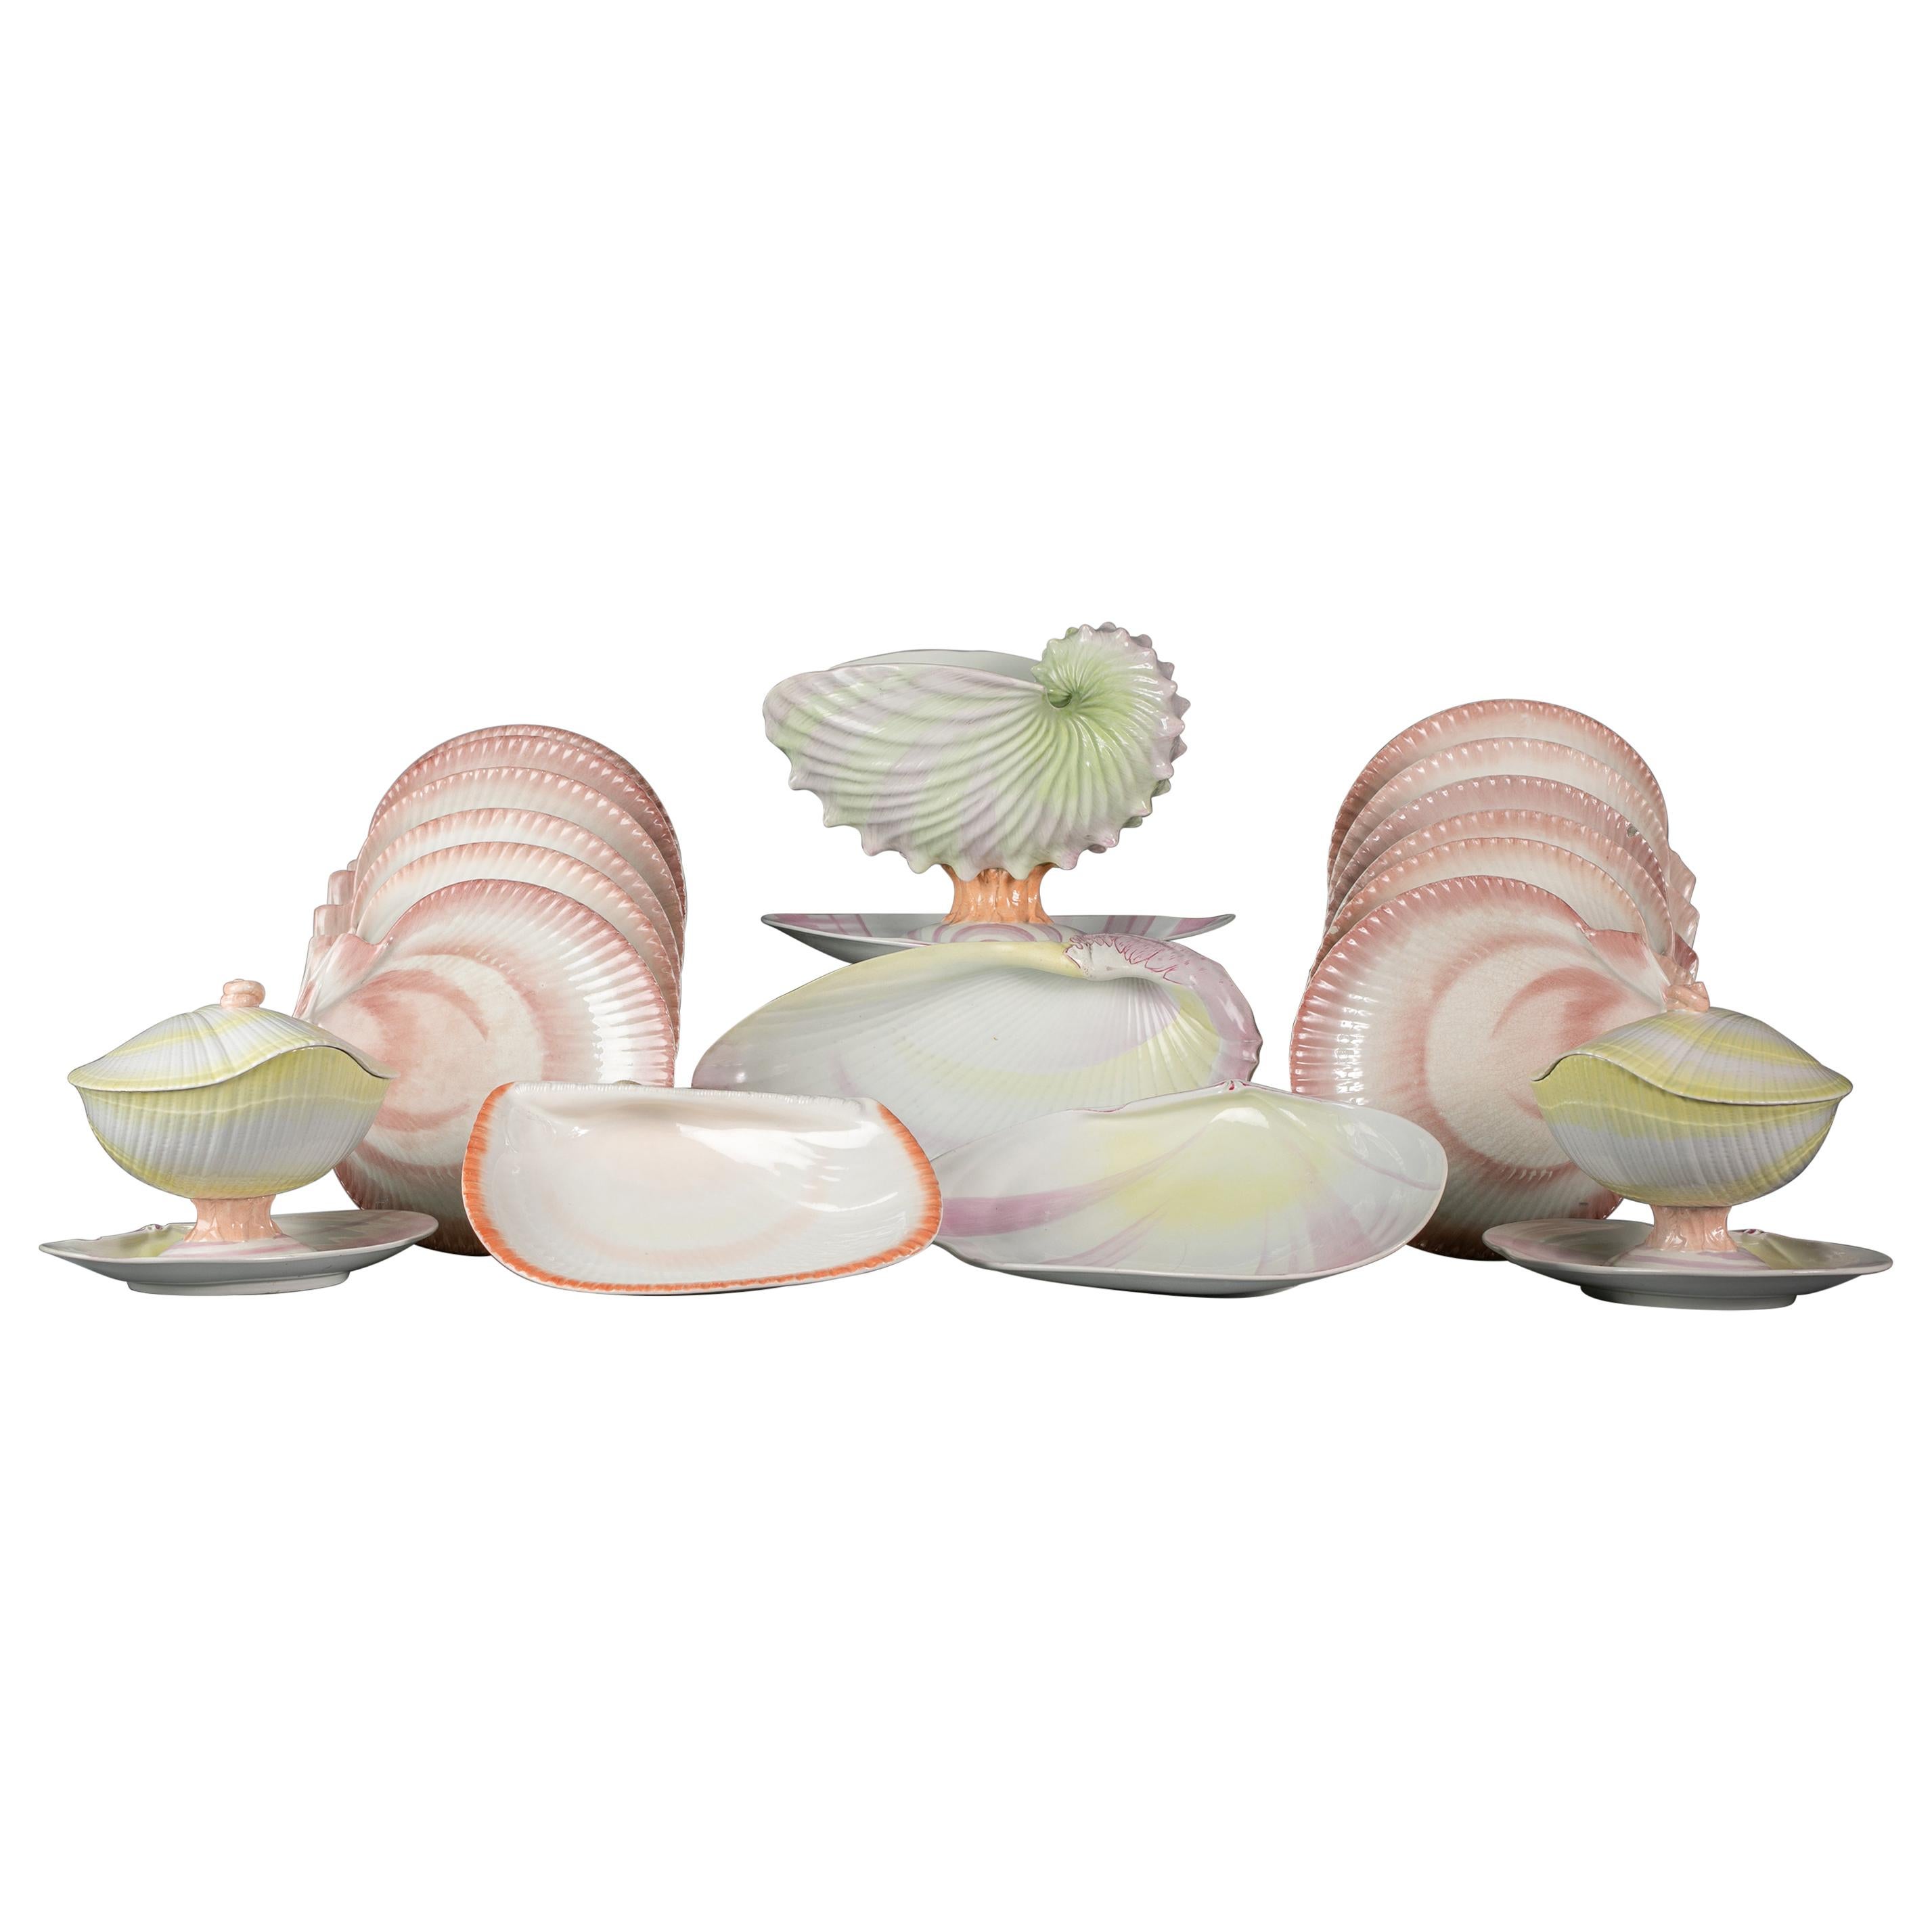 Großes und zusammengesetztes Wedgwood 'Wreathed Shell' Teil Dessertservice, um 1815